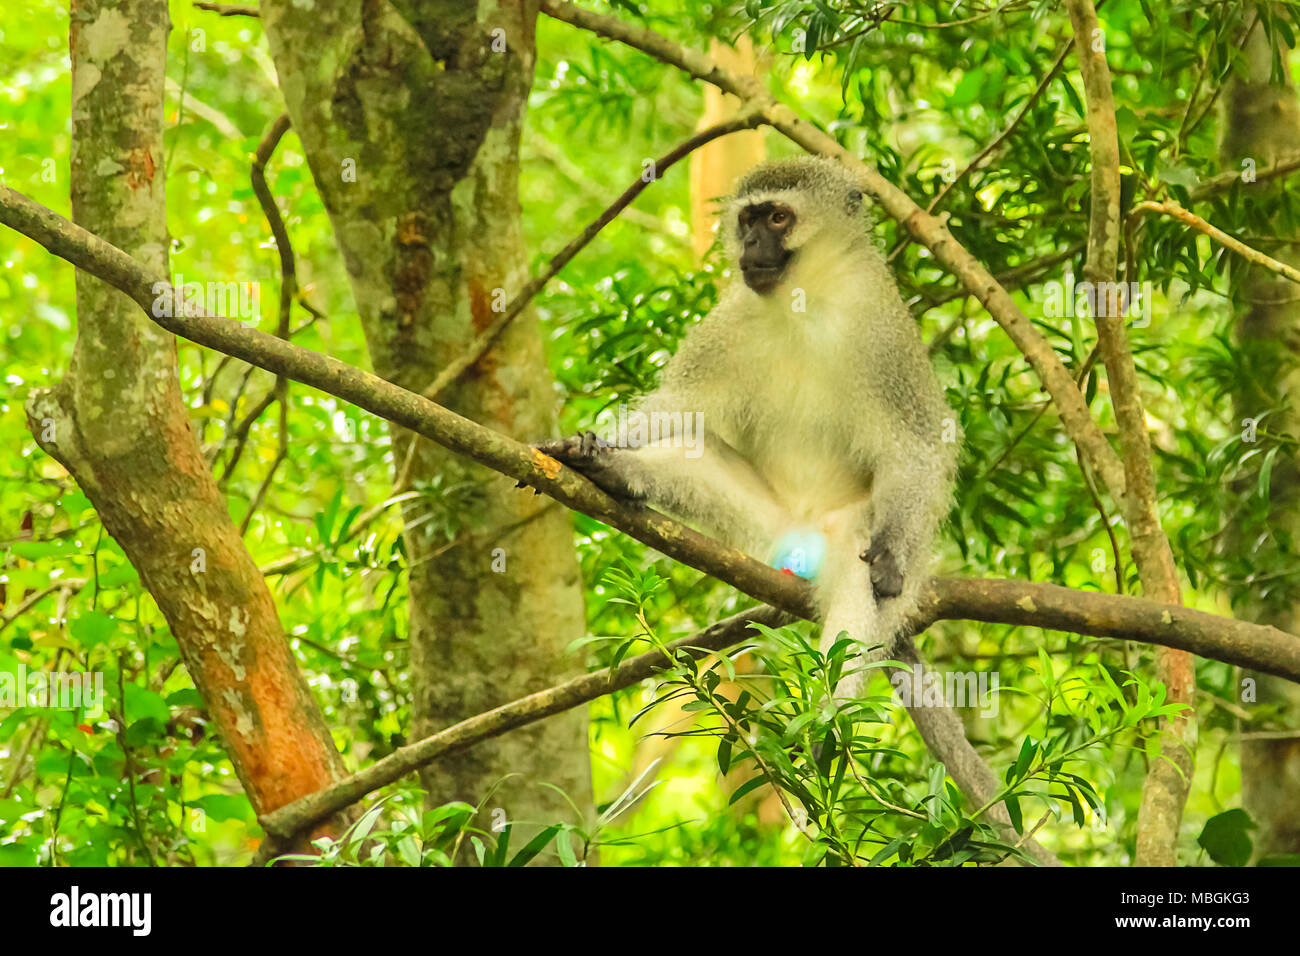 Meerkatze. Blaue Hoden Affe auf einem Baum in der Afrikanischen Wald, Chlorocebus Pygerythrus Arten leben in südöstlicher Teil von Afrika. Stockfoto